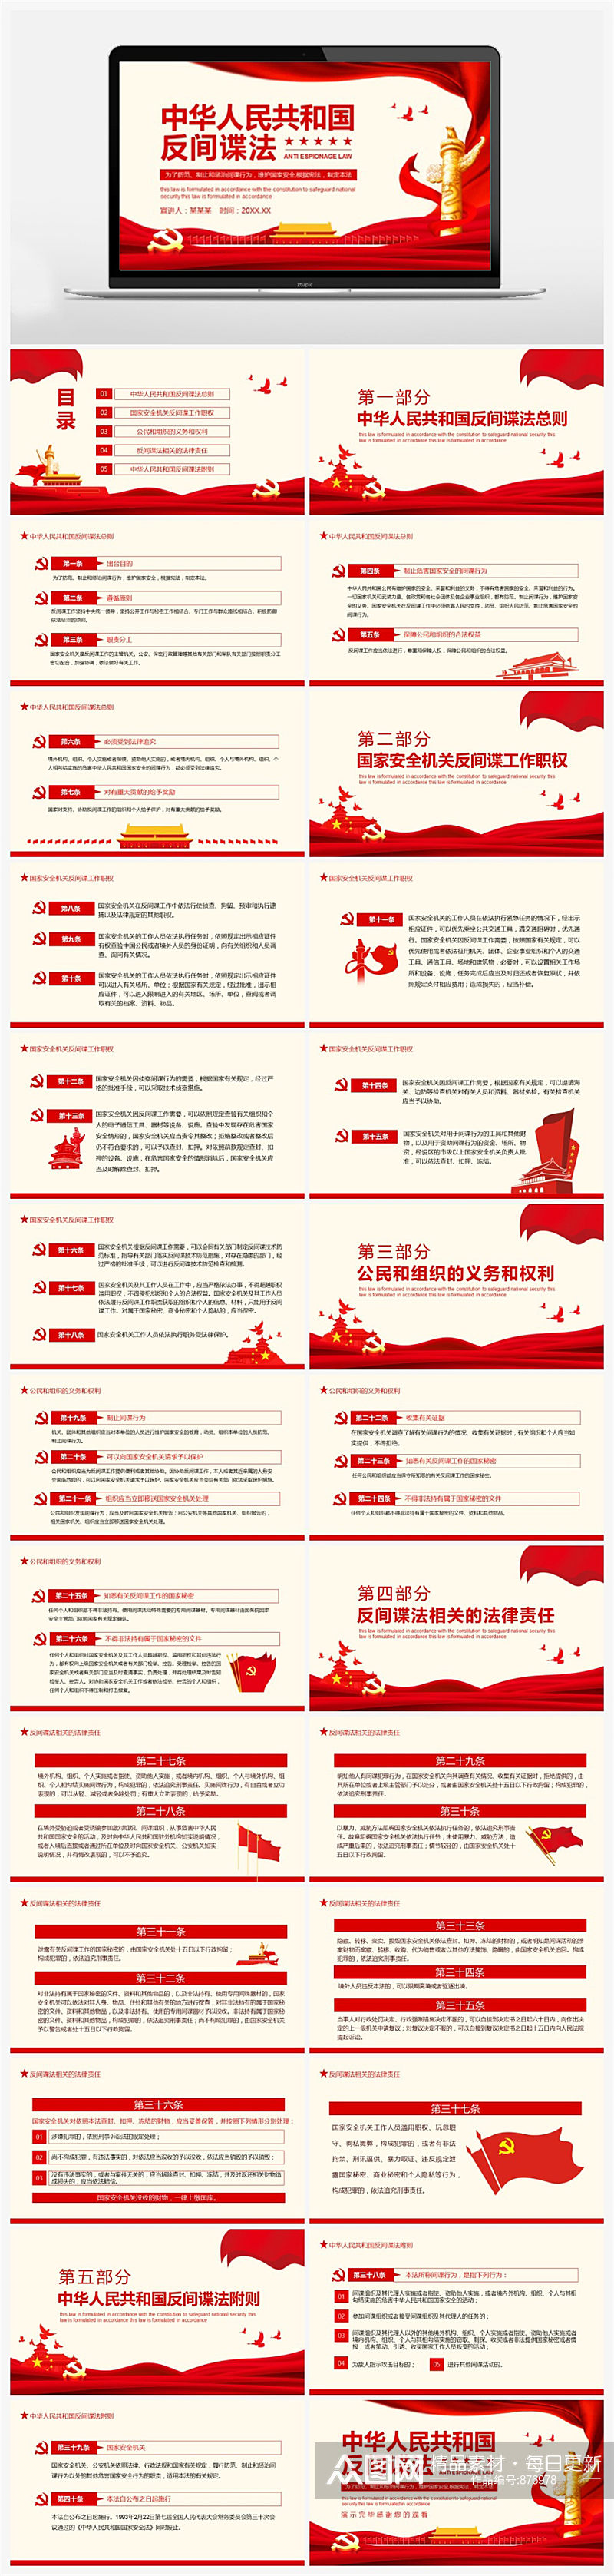 中华人民共和国反间谍法PPT模板素材